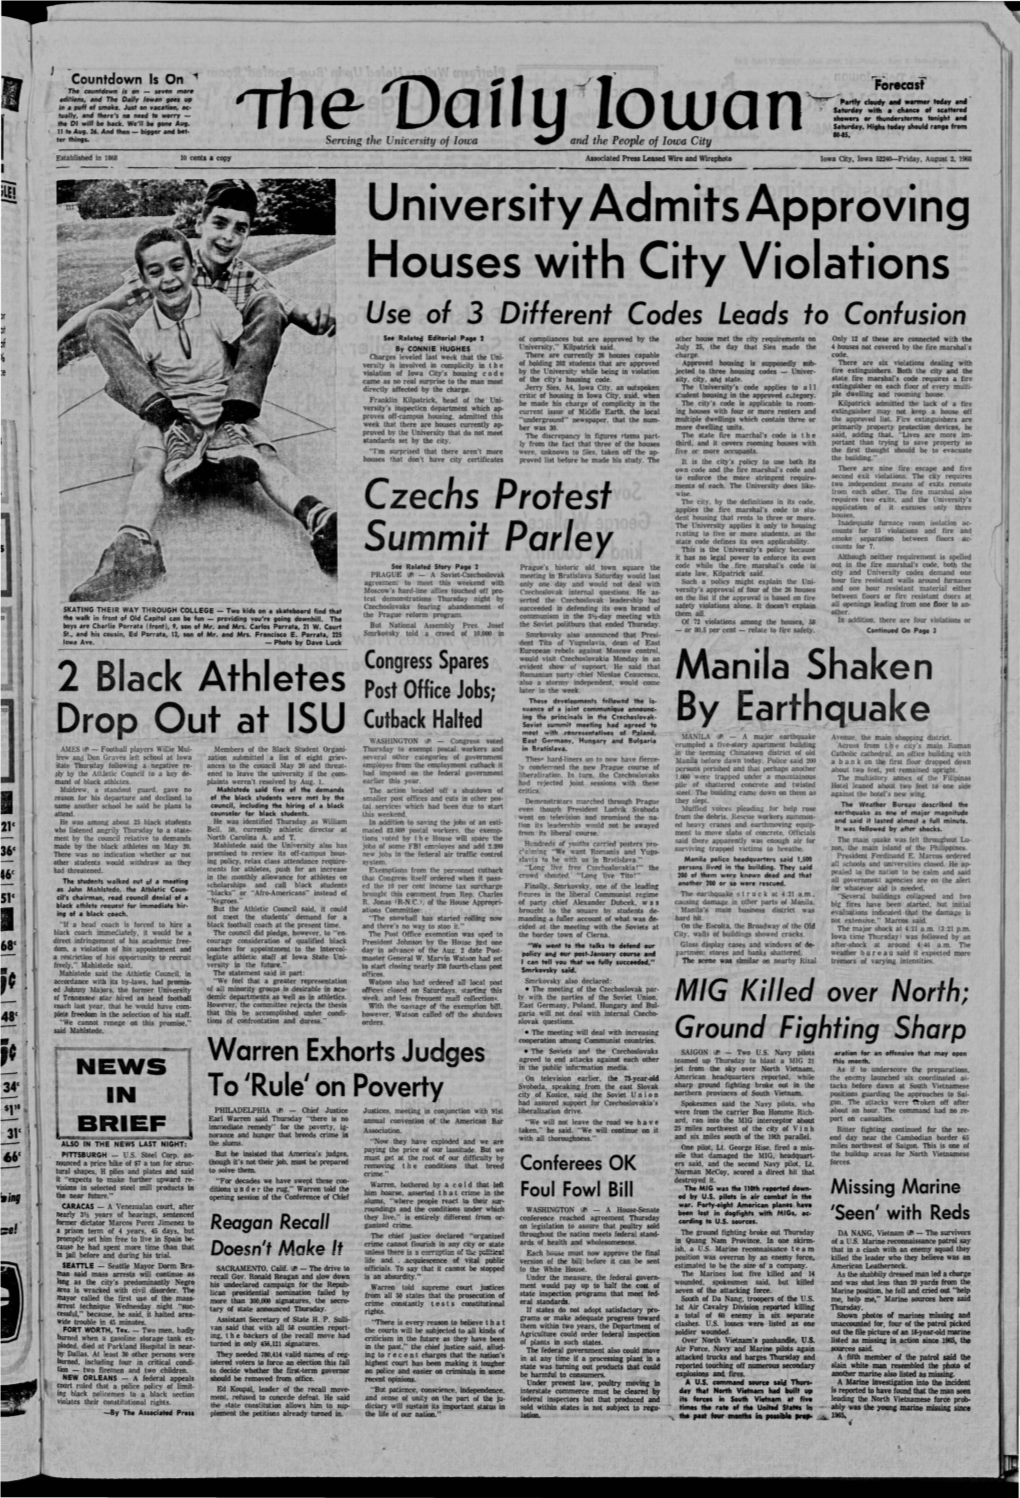 Daily Iowan (Iowa City, Iowa), 1968-08-02